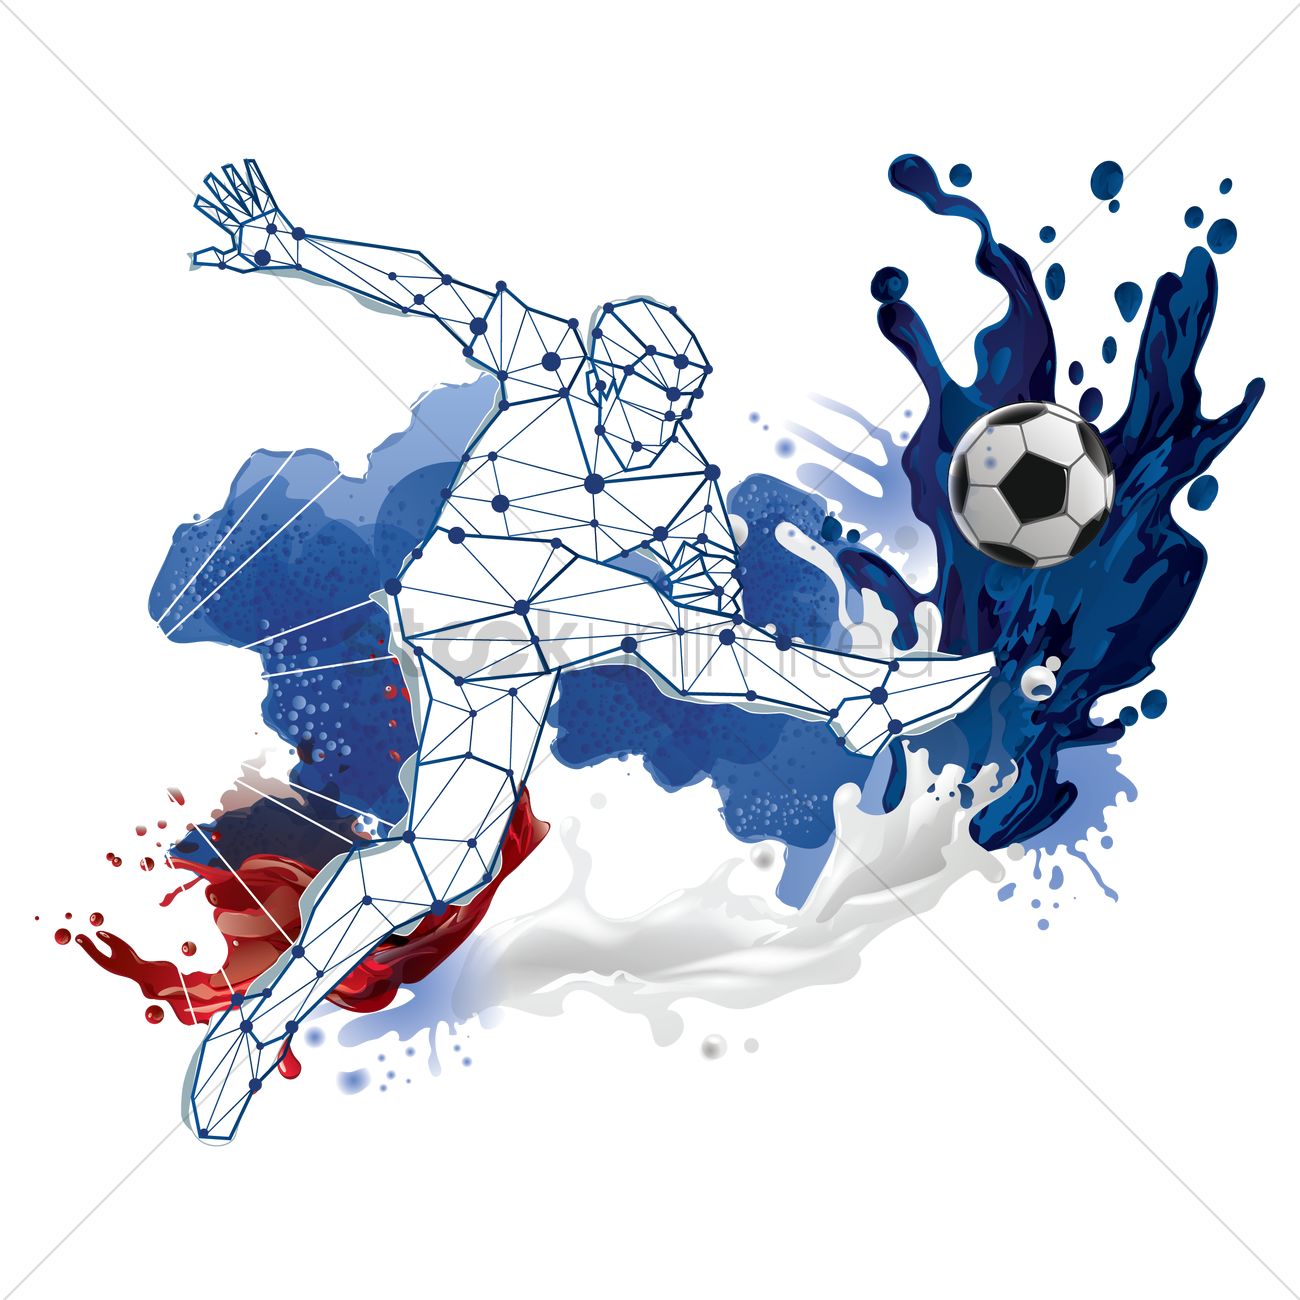 . PlusPng.com Soccer Ball Png